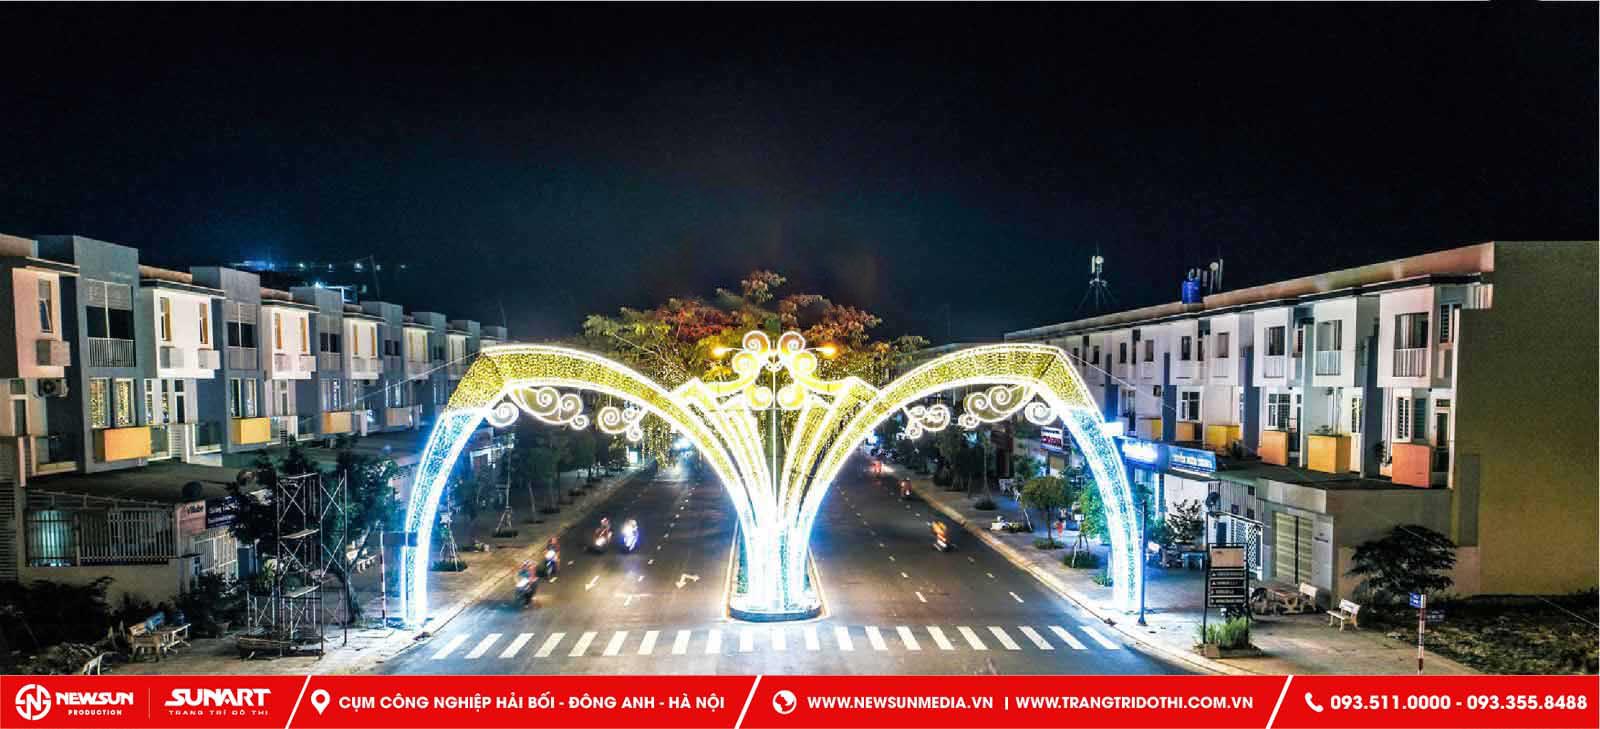  cổng chào Thái Bình được trang trí ấn tượng giống như như lời chào nồng nhiệt, thân thiện của người dân Thái Bình đối với du khách thập phương